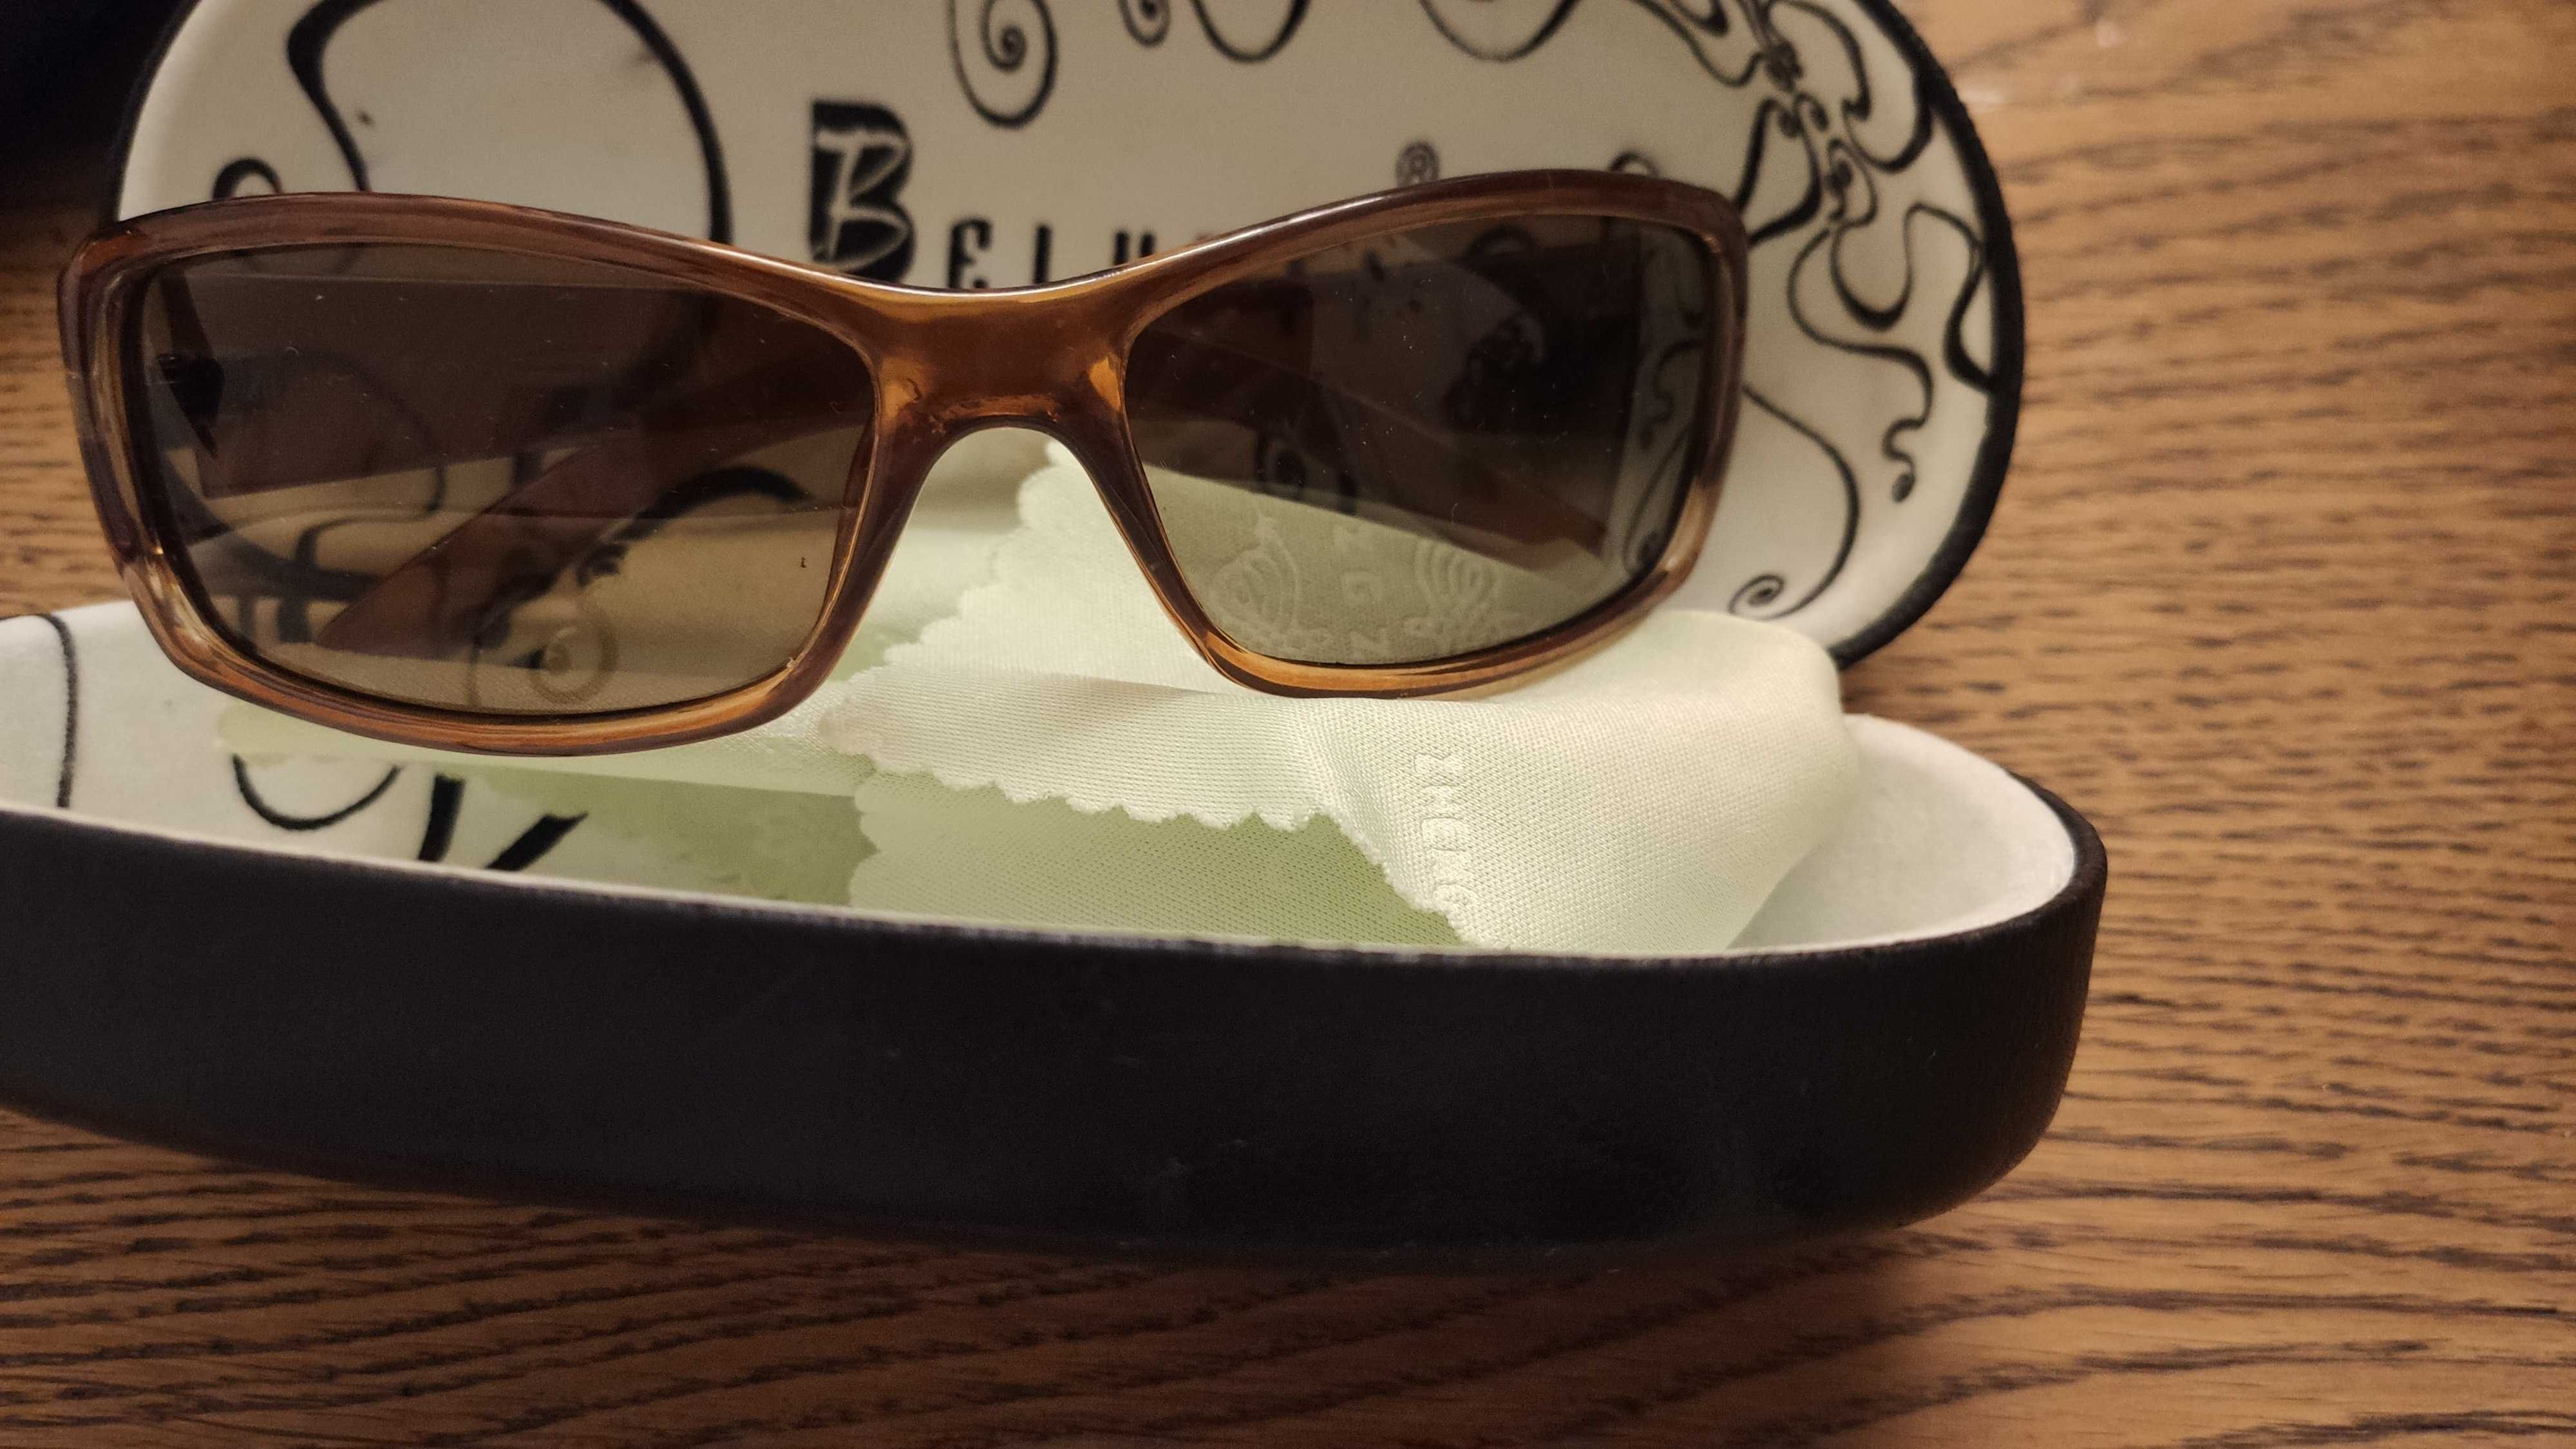 Okulary przeciwsłoneczne Belutti w  skórzanym etui